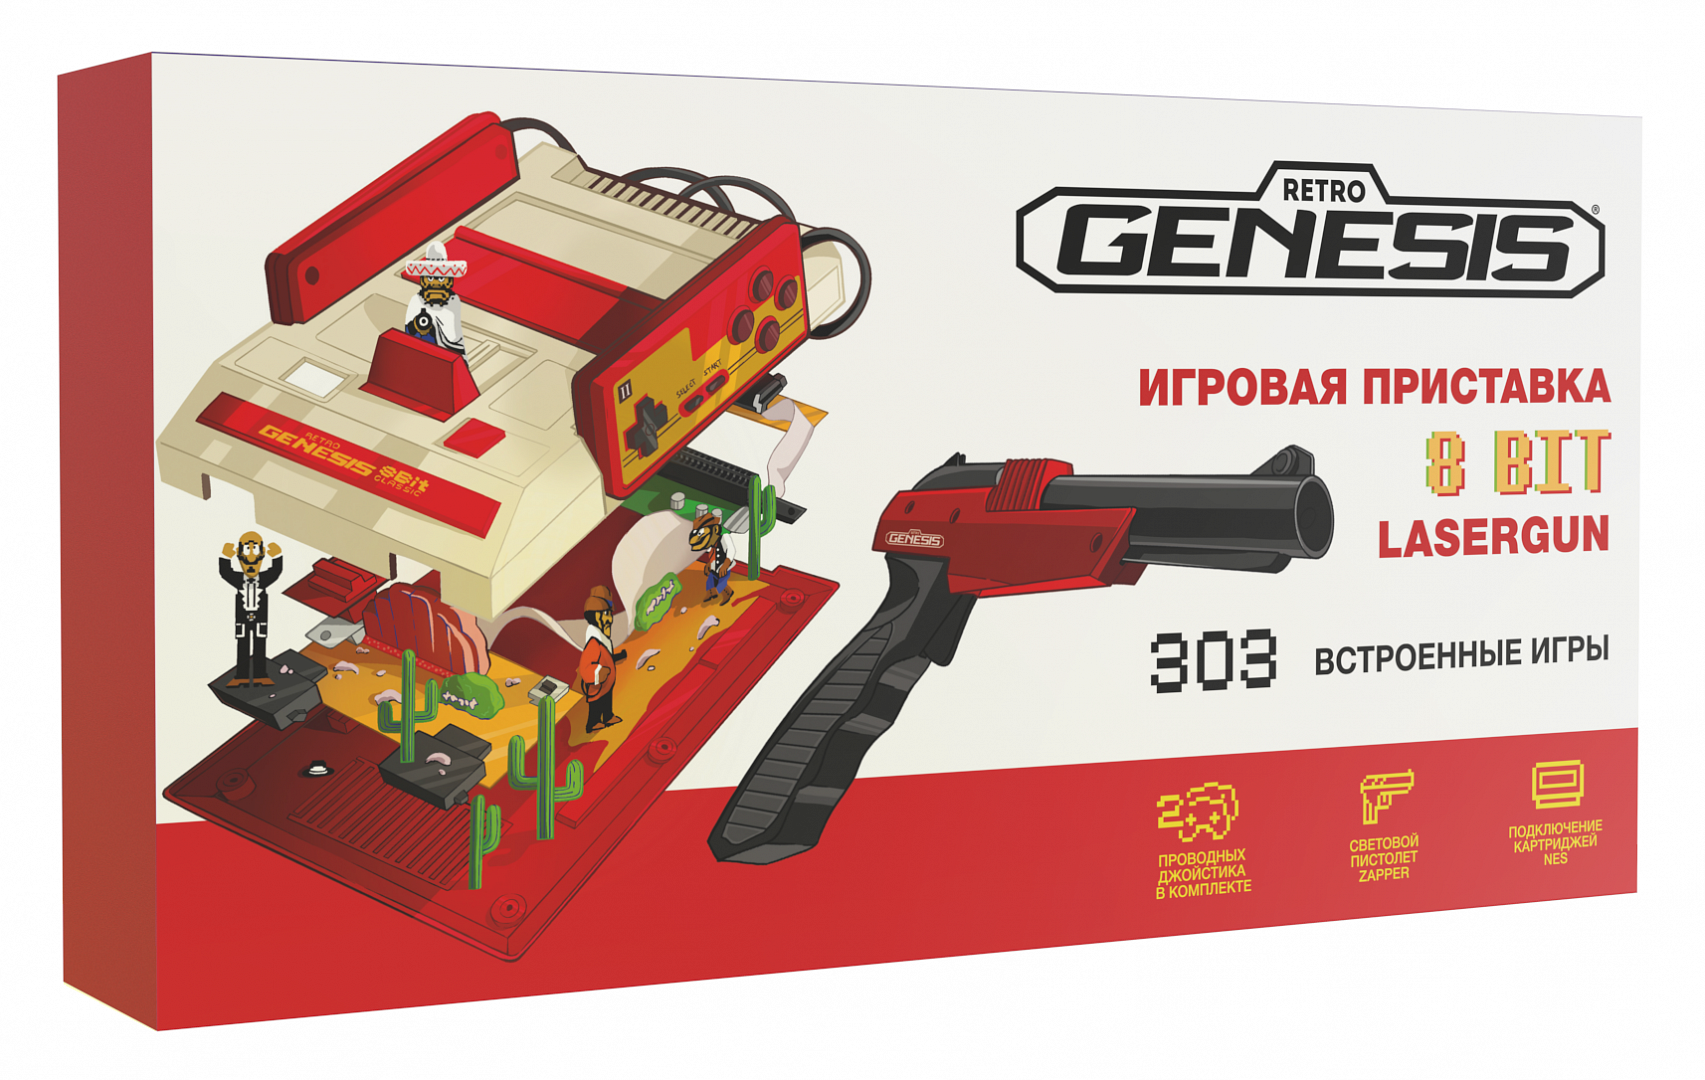 Игровая приставка Retro Genesis 8 Bit Lasergun + 303 игры (модель: C-56C, Серия: C-50, AV кабель, 2 проводных джойстика + пистолет Заппер)